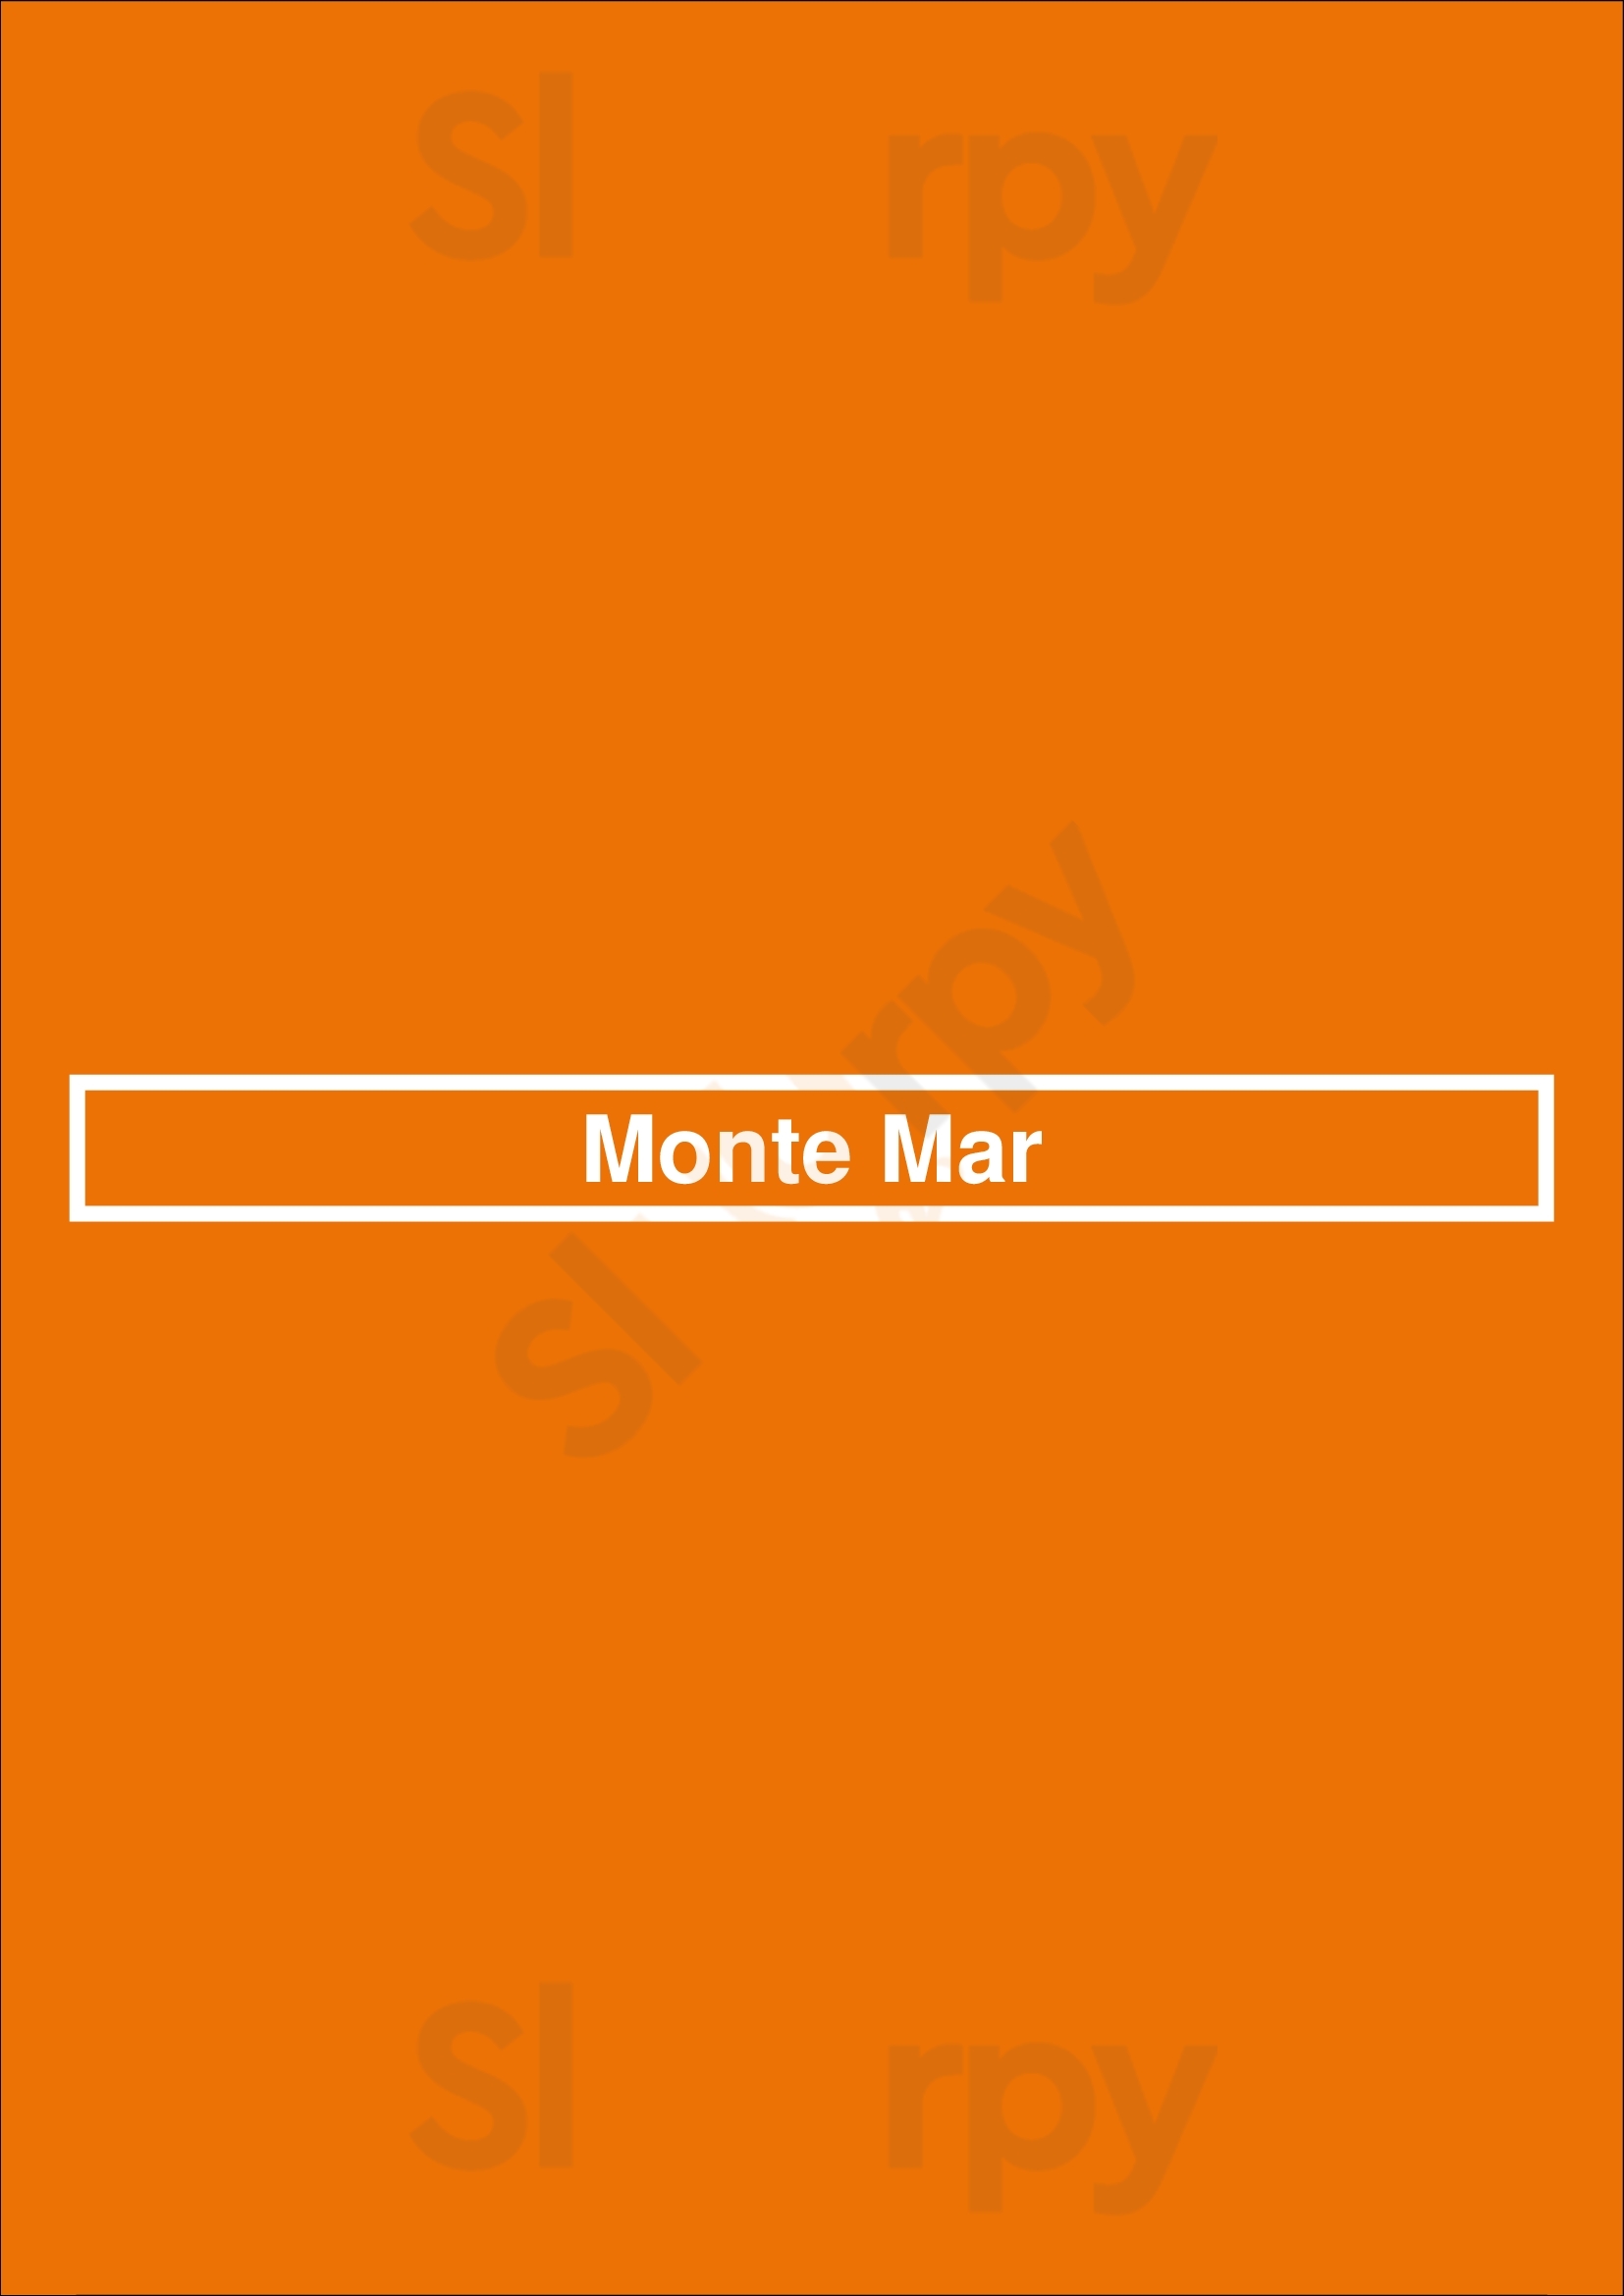 Monte Mar Cascais Menu - 1